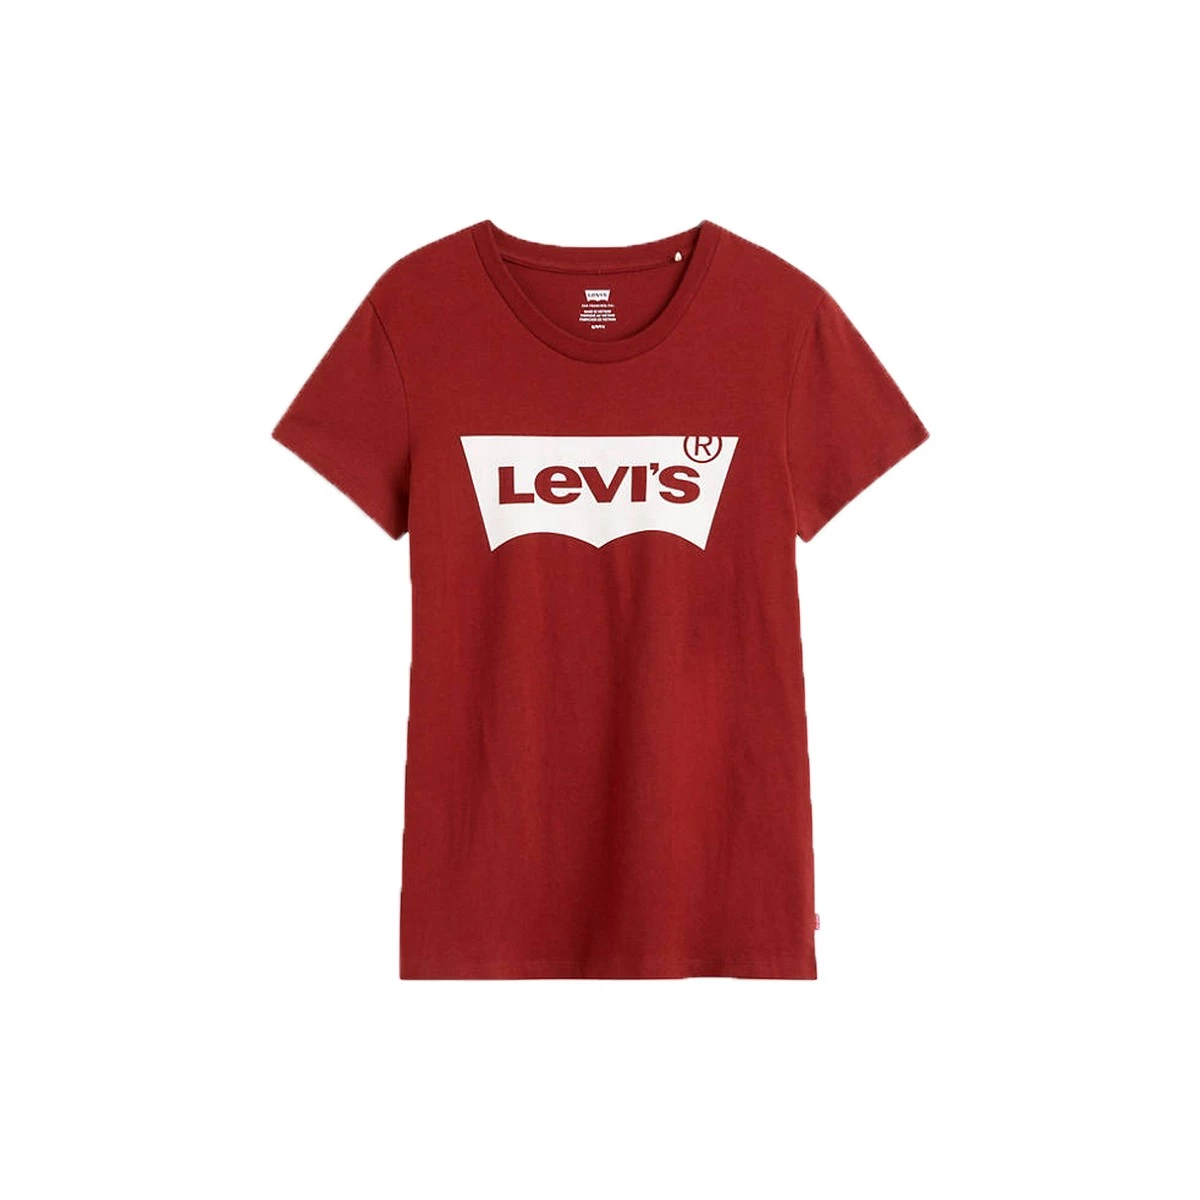 Levi's dames t-shirt met logo print | Uffelen Mode